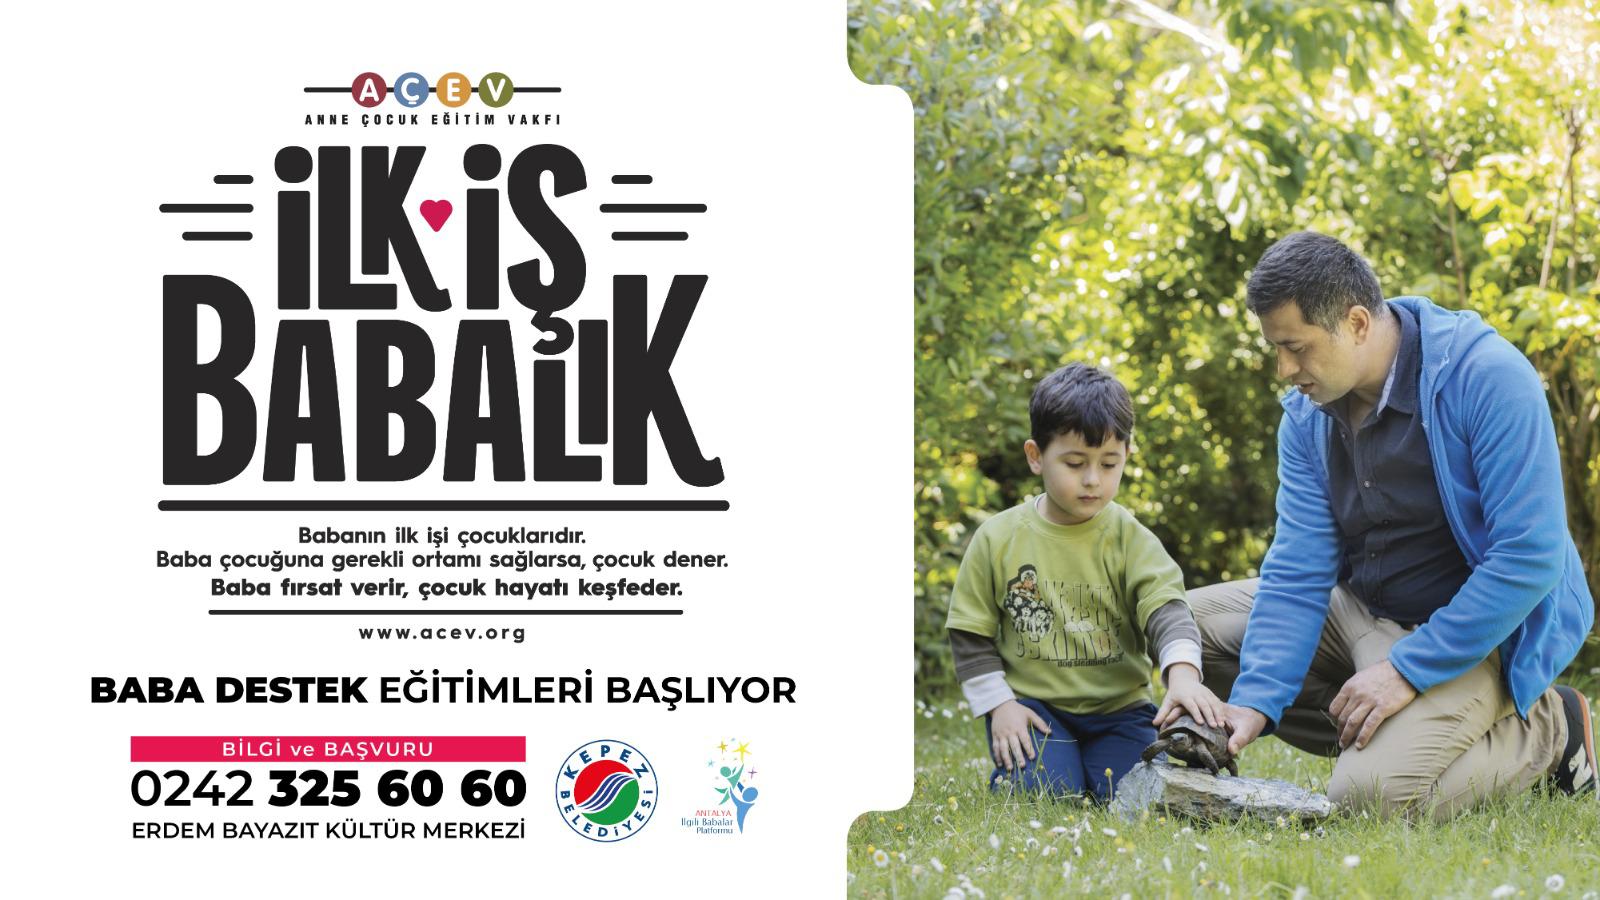 "İLK İŞ BABALIK" BABA DESTEK EĞİTİMLERİ BAŞLIYOR!